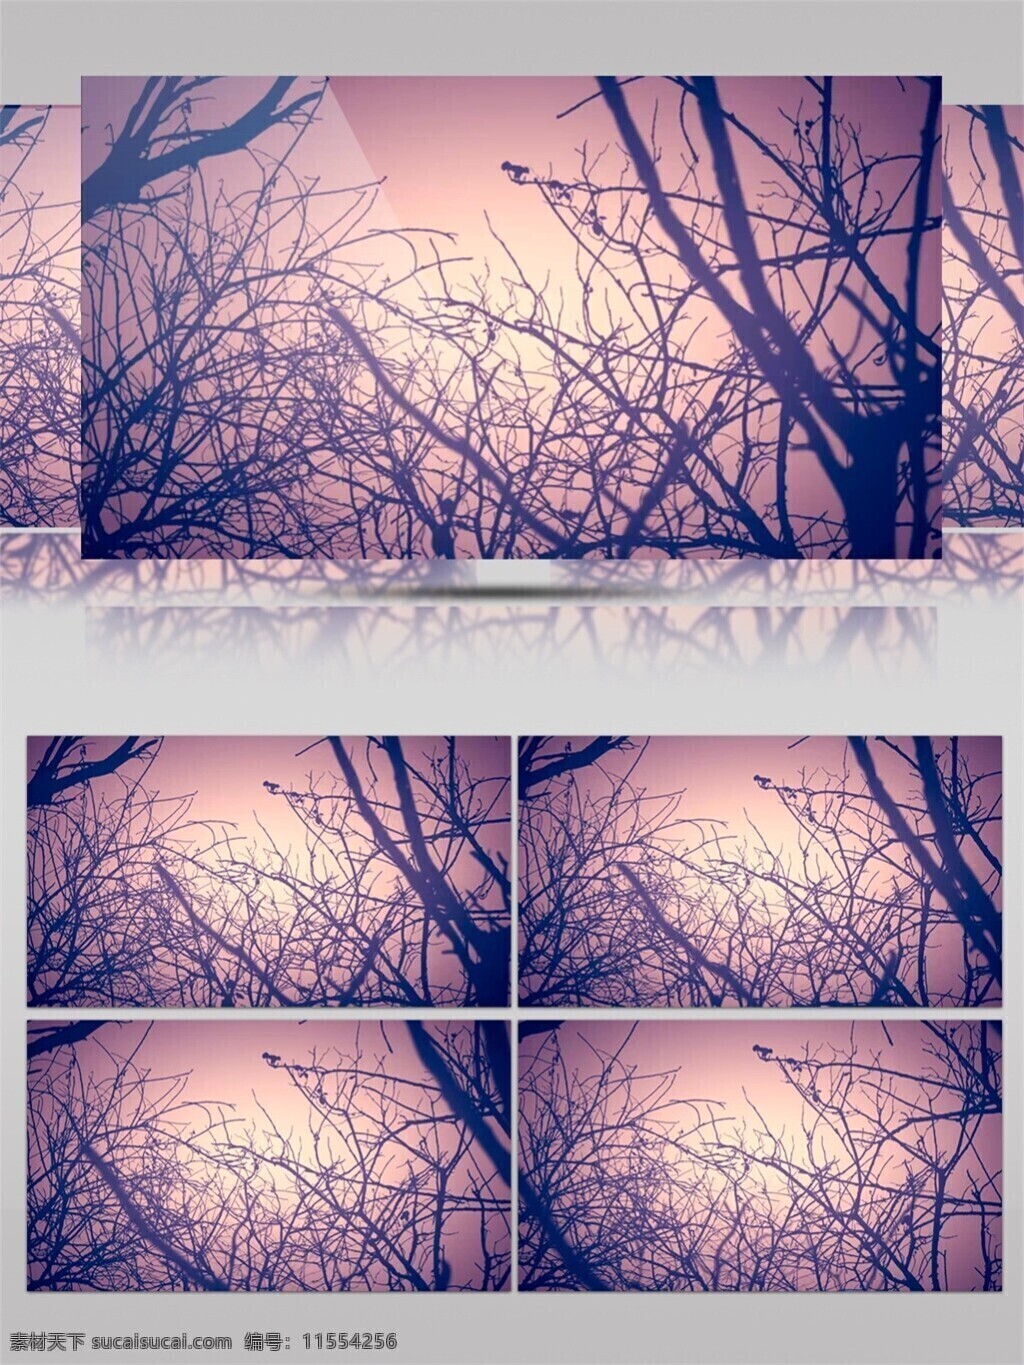 红色 夕阳 树枝 视频 光束 视觉享受 手机壁纸 光斑散射